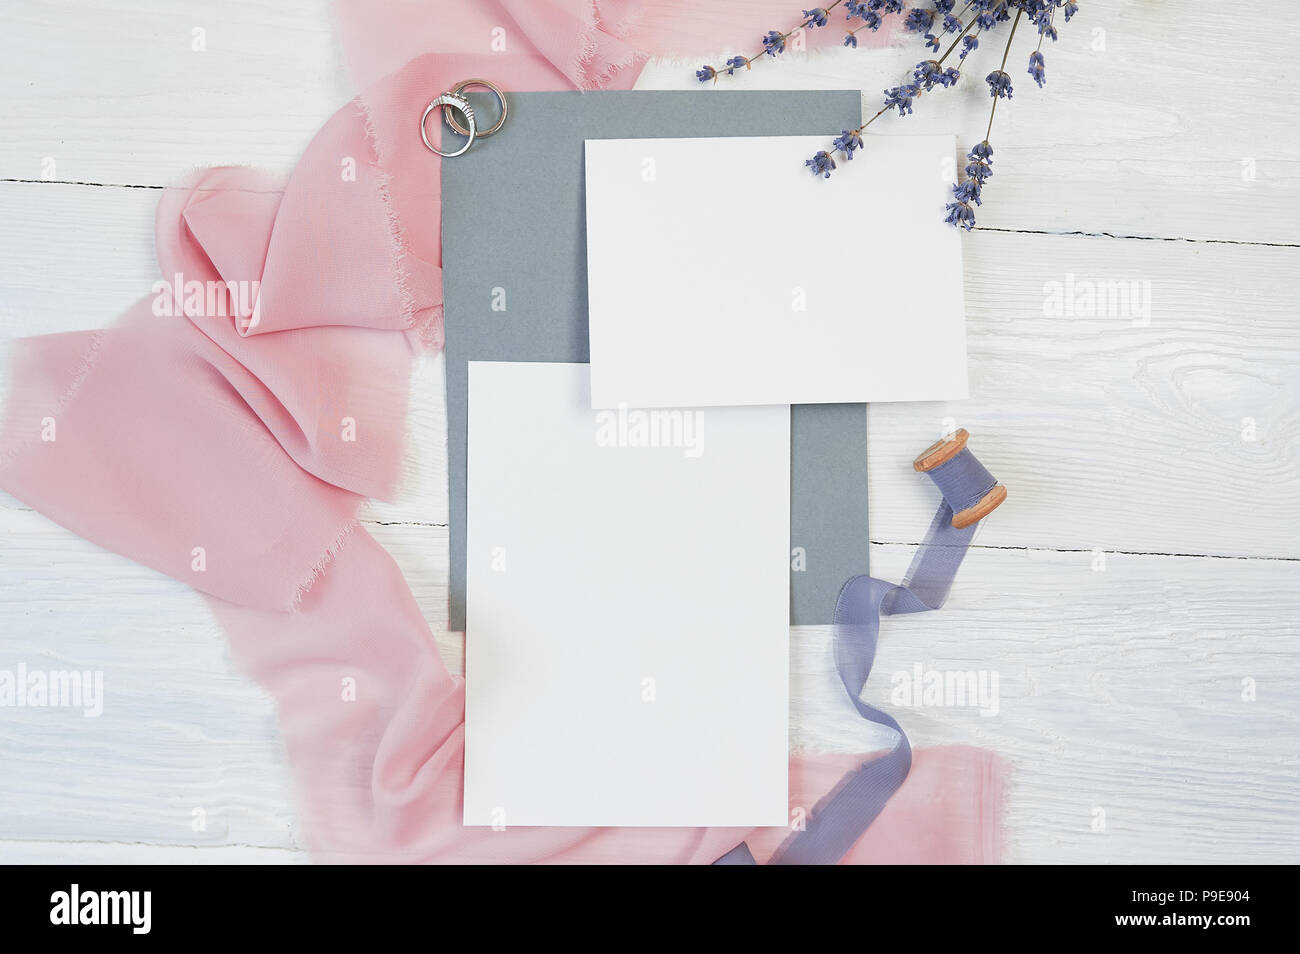 Carte vierge blanc avec des deux anneaux de mariage sur un fond de tissu rose et bleu avec des fleurs de lavande sur un fond blanc. Immersive avec enveloppe et carte vierge. Mise à plat. Vue d'en haut Banque D'Images